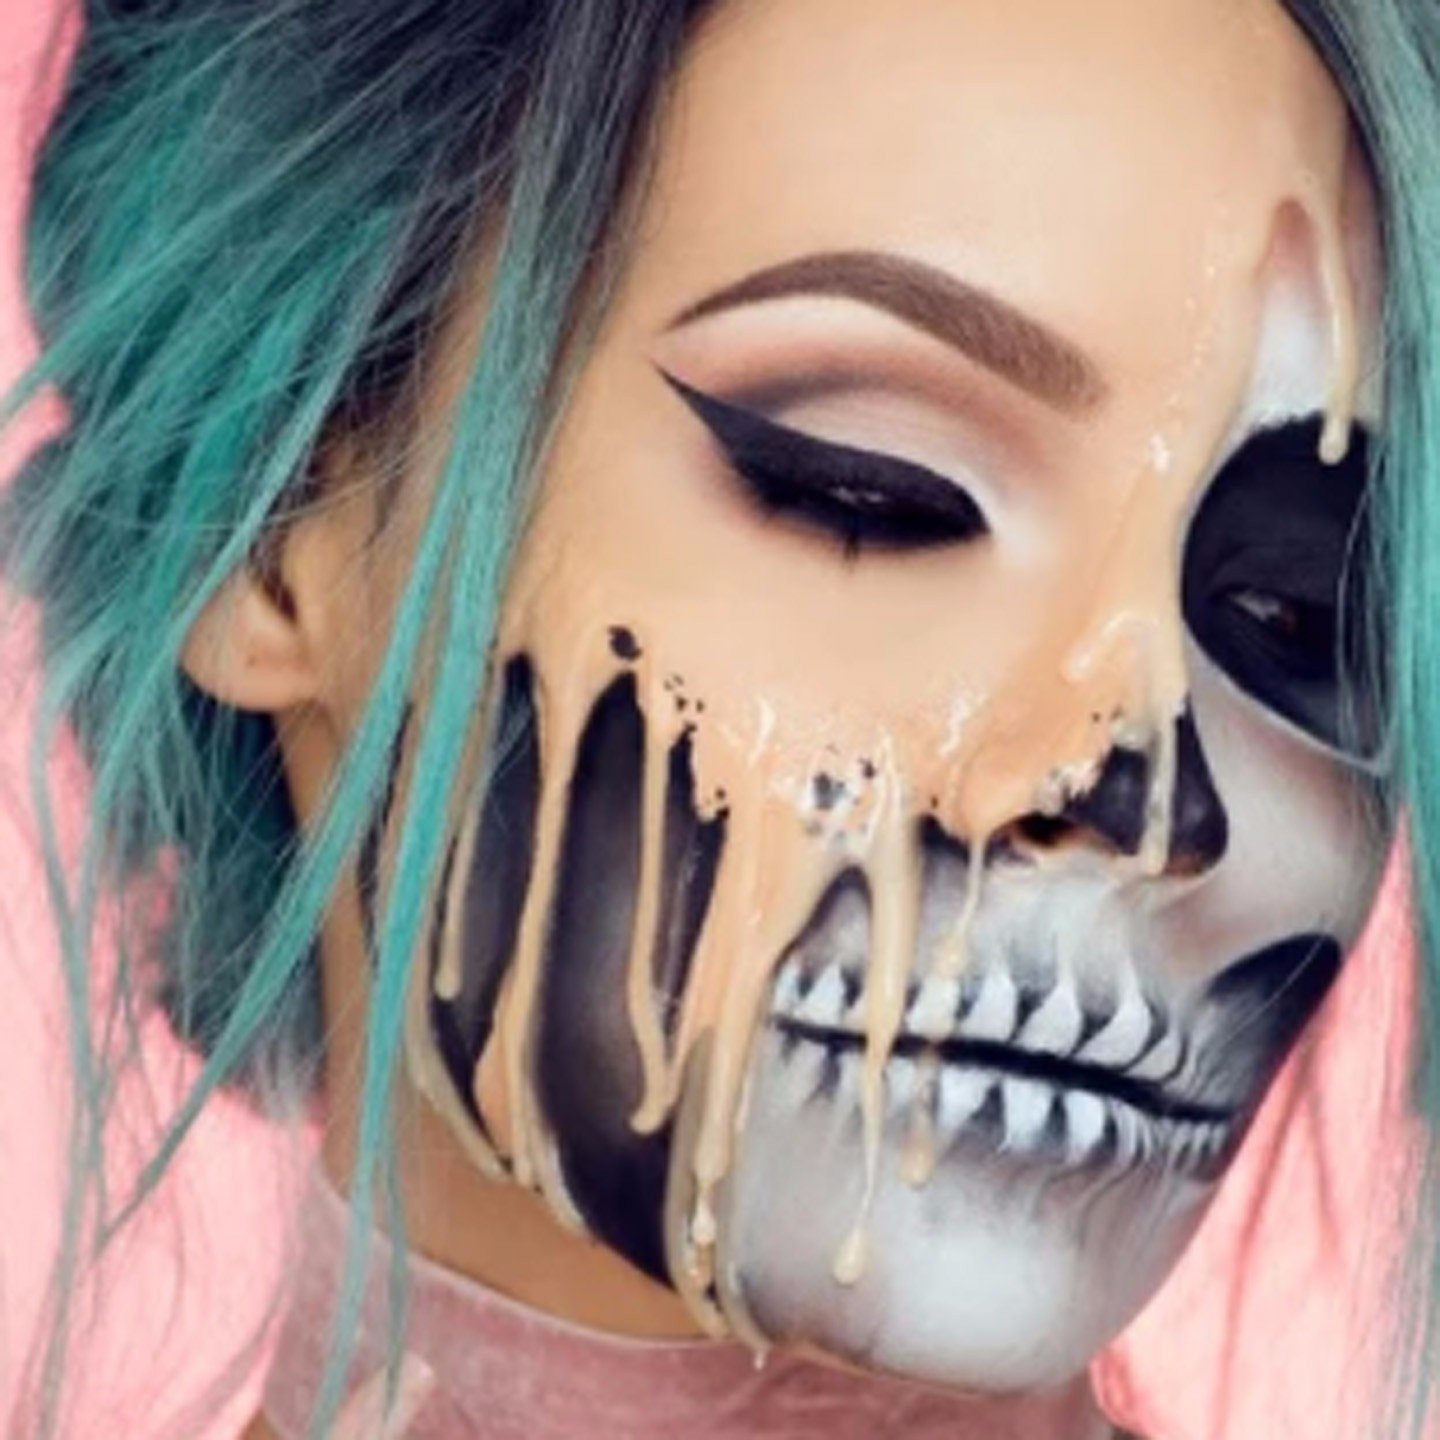 Desi Perkins Halloween Makeup Tutorials | POPSUGAR Latina